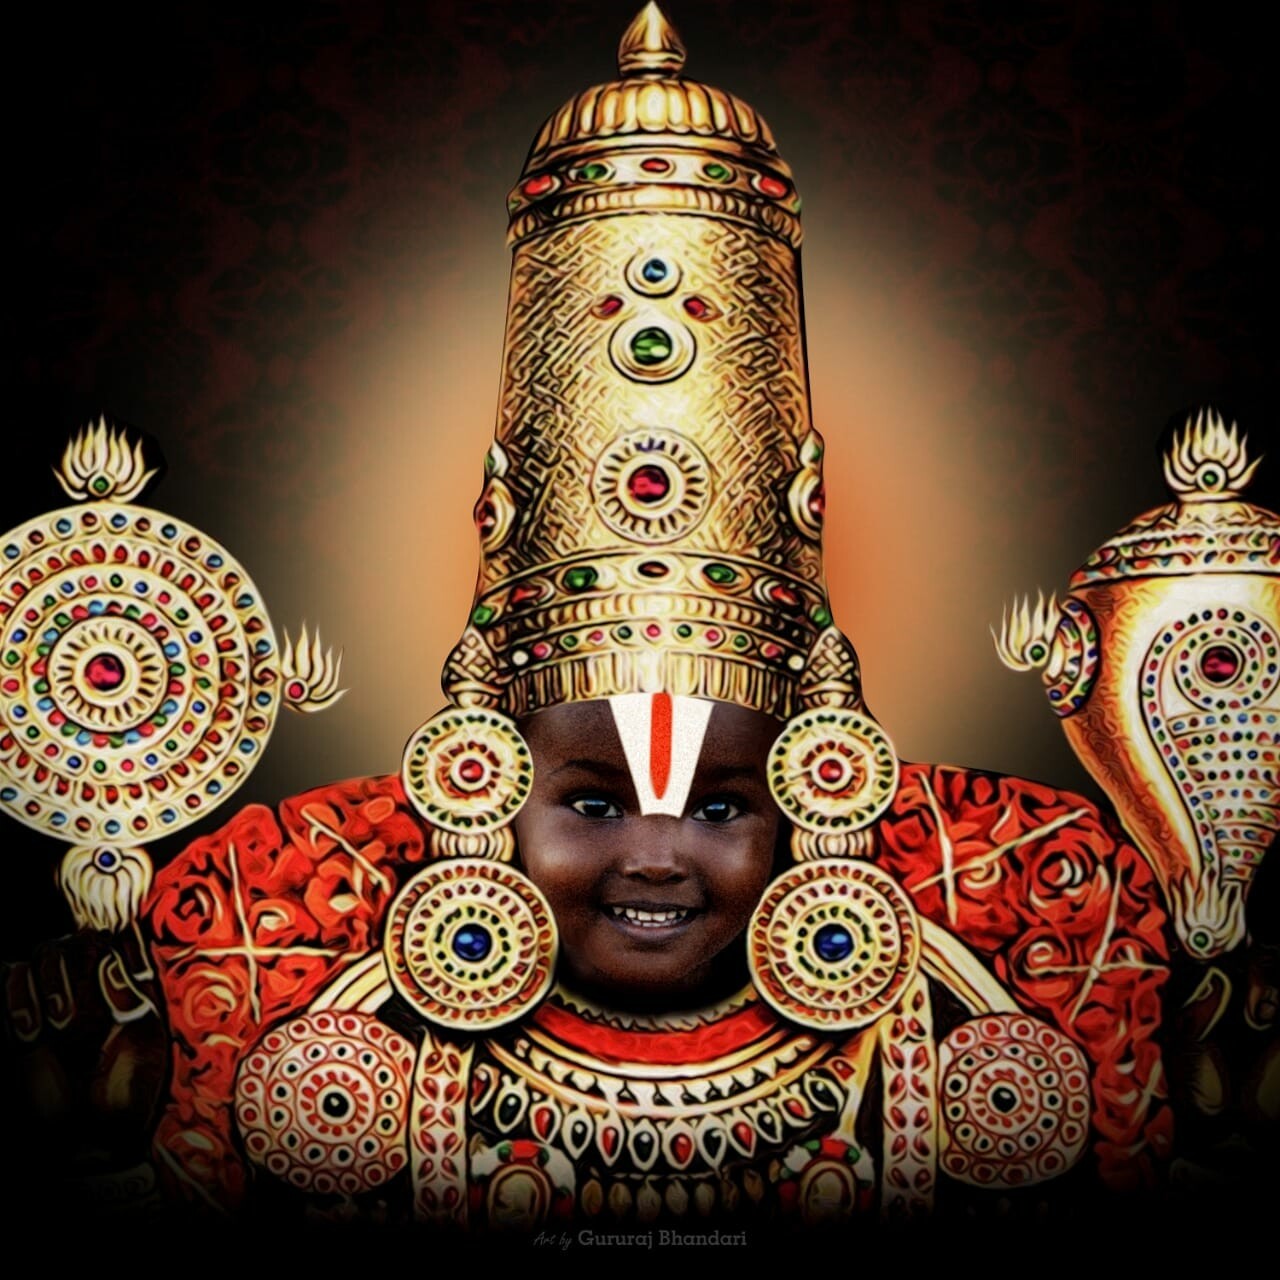 Gururaj Bhandari - Lord Sri Venkateswara